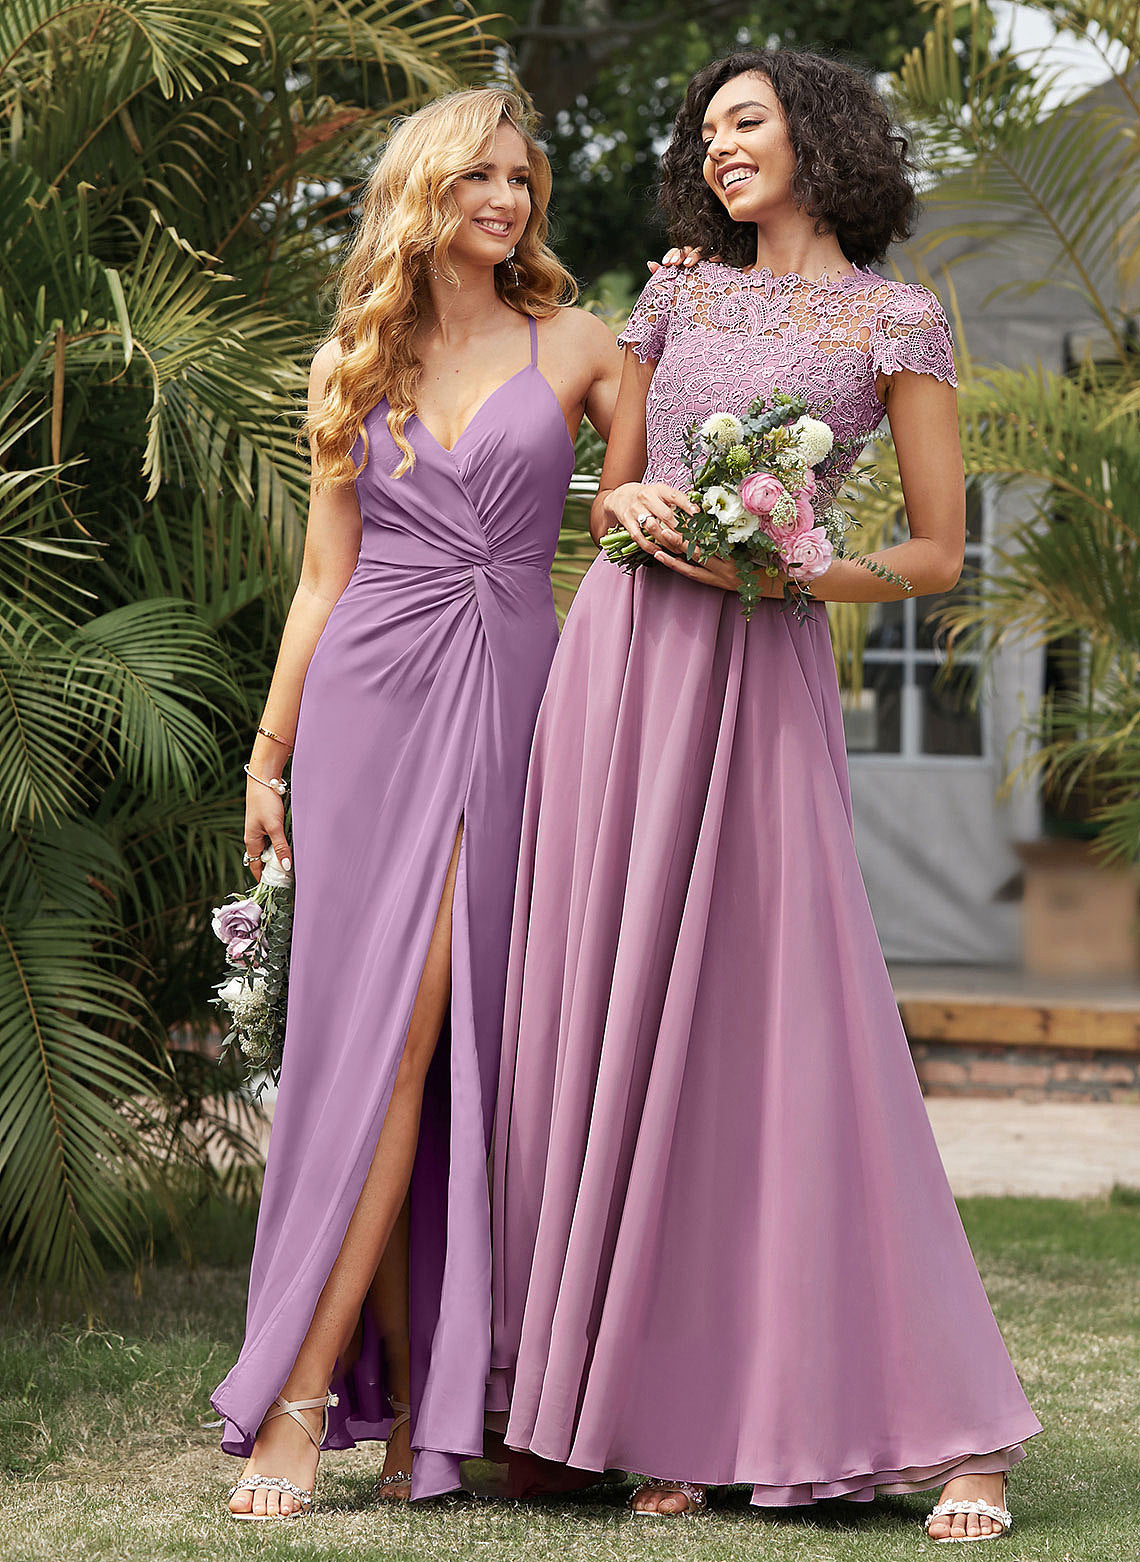 Silhouette Fabric A-Line Neckline Embellishment Length ScoopNeck Pockets Floor-Length Keira A-Line/Princess Sleeveless Bridesmaid Dresses